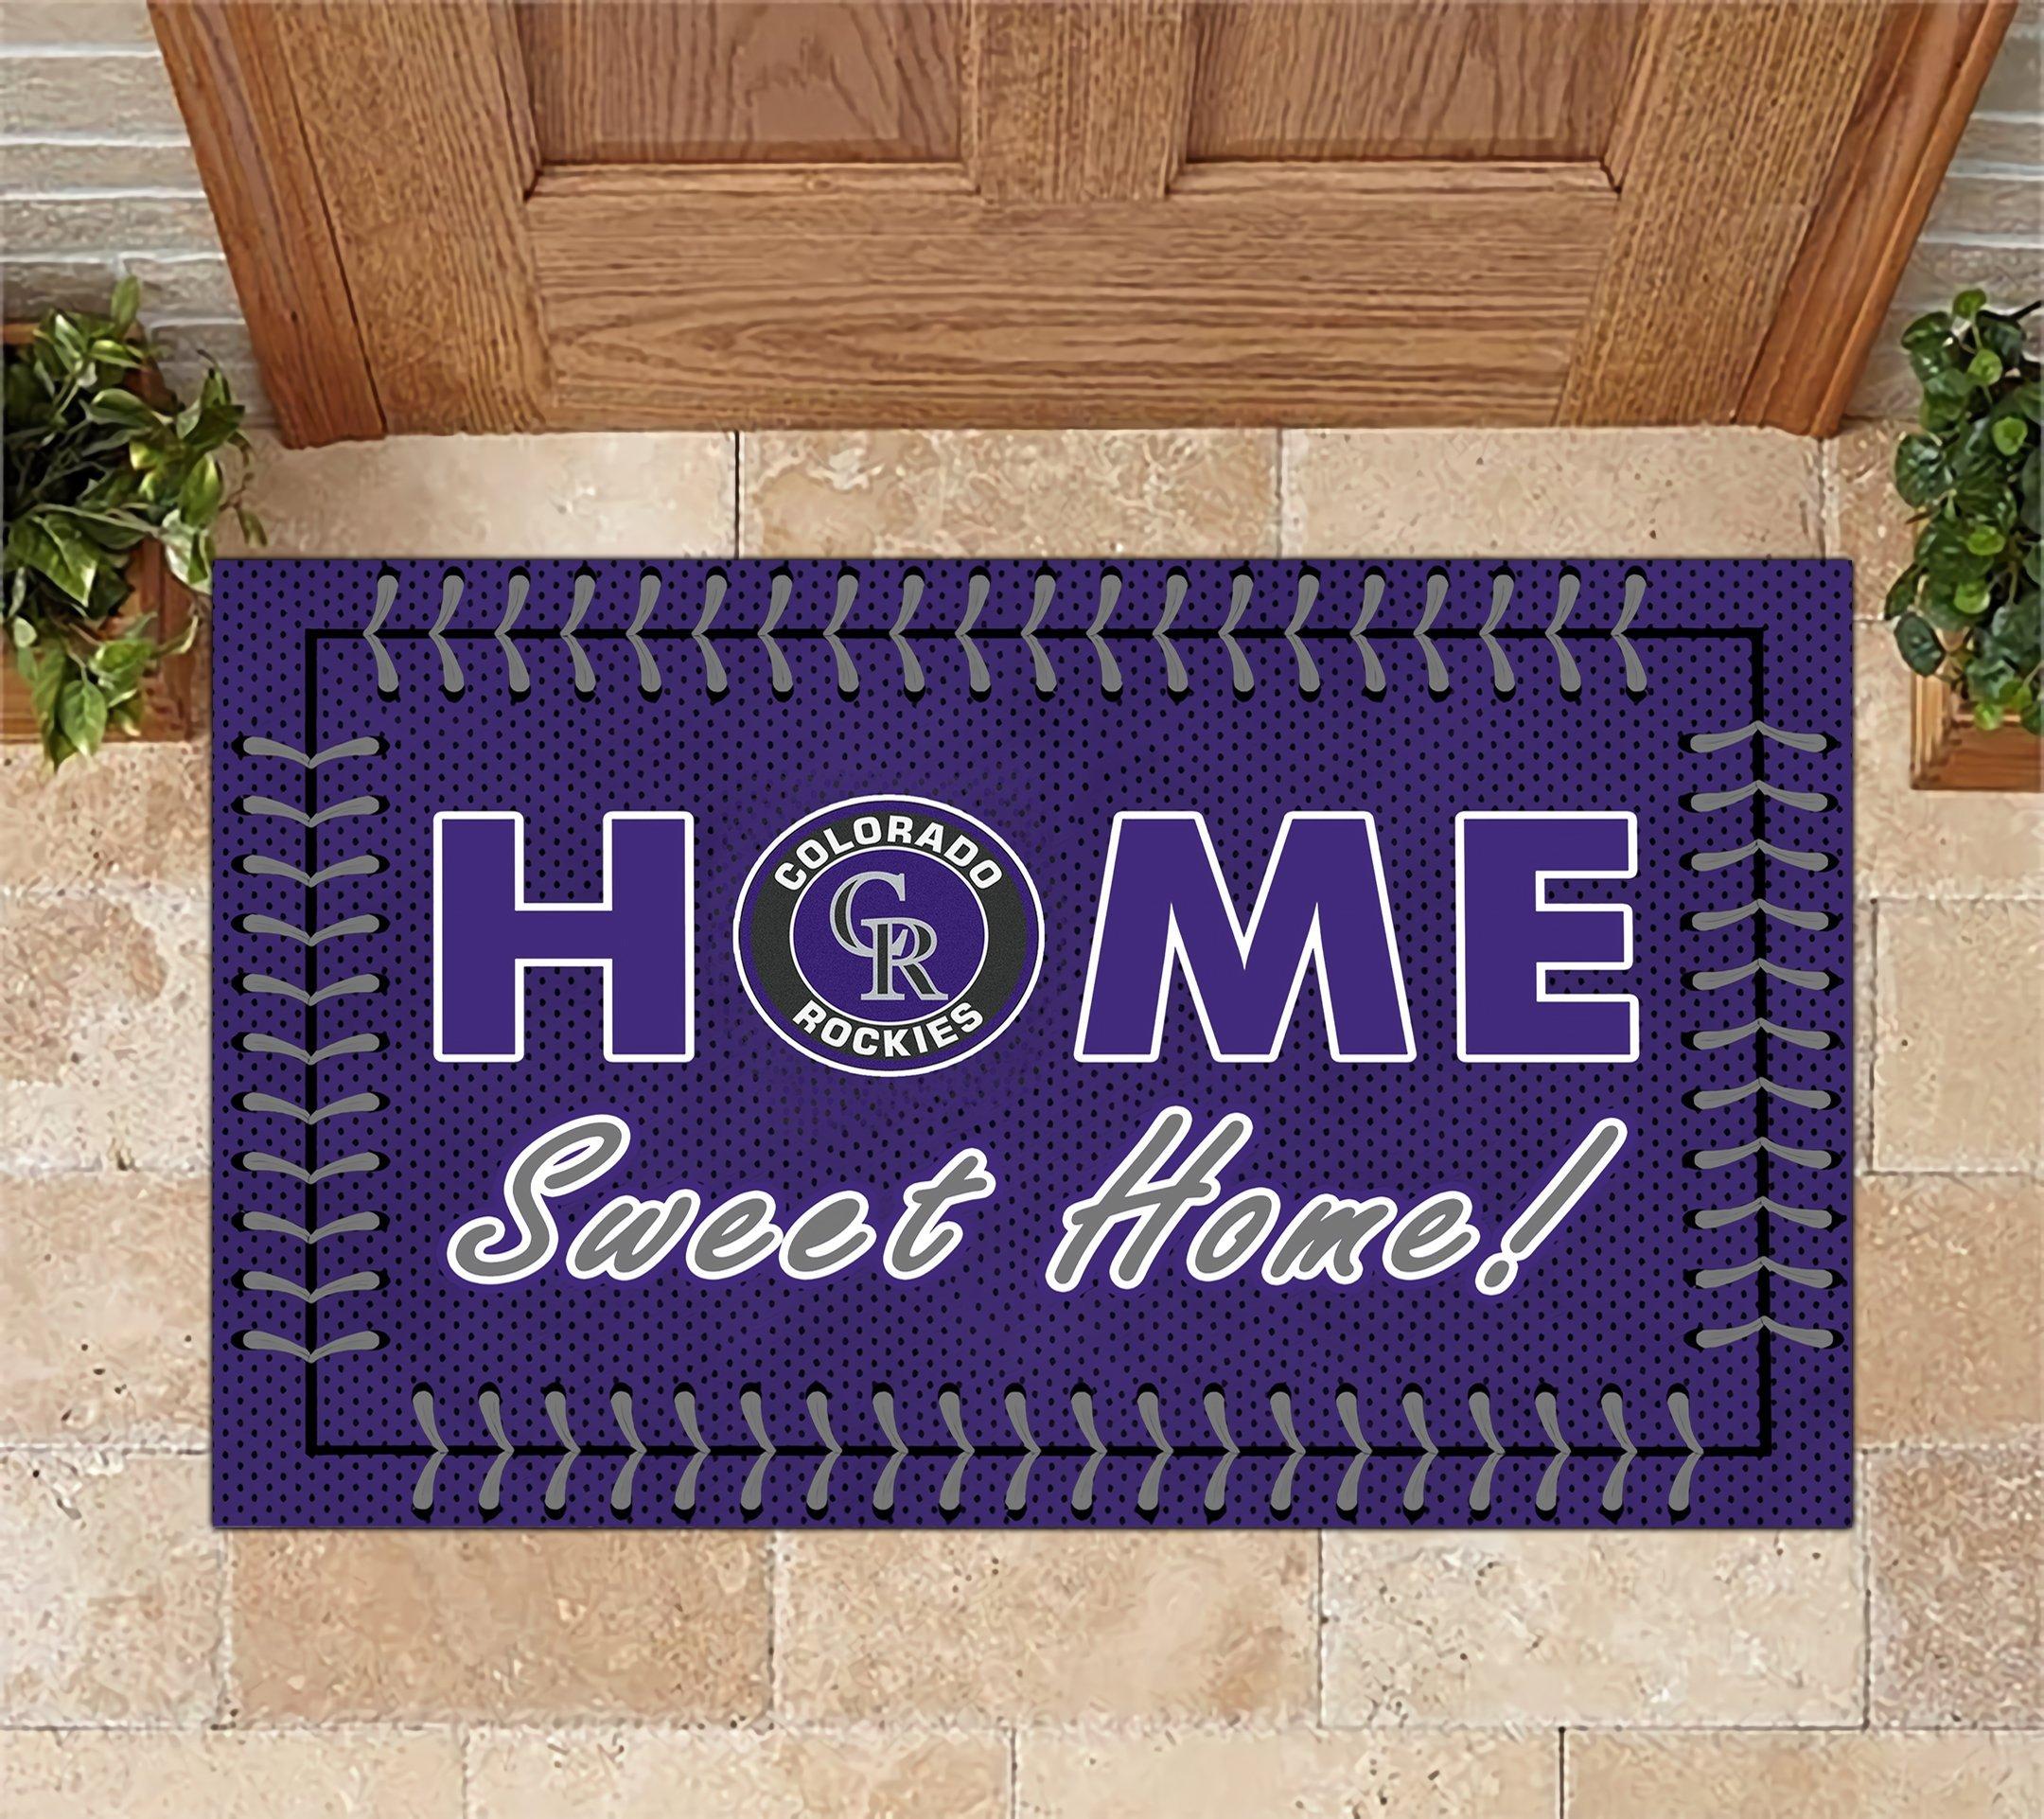 Colorado Rockies Home Sweet Home Doormat Doormat